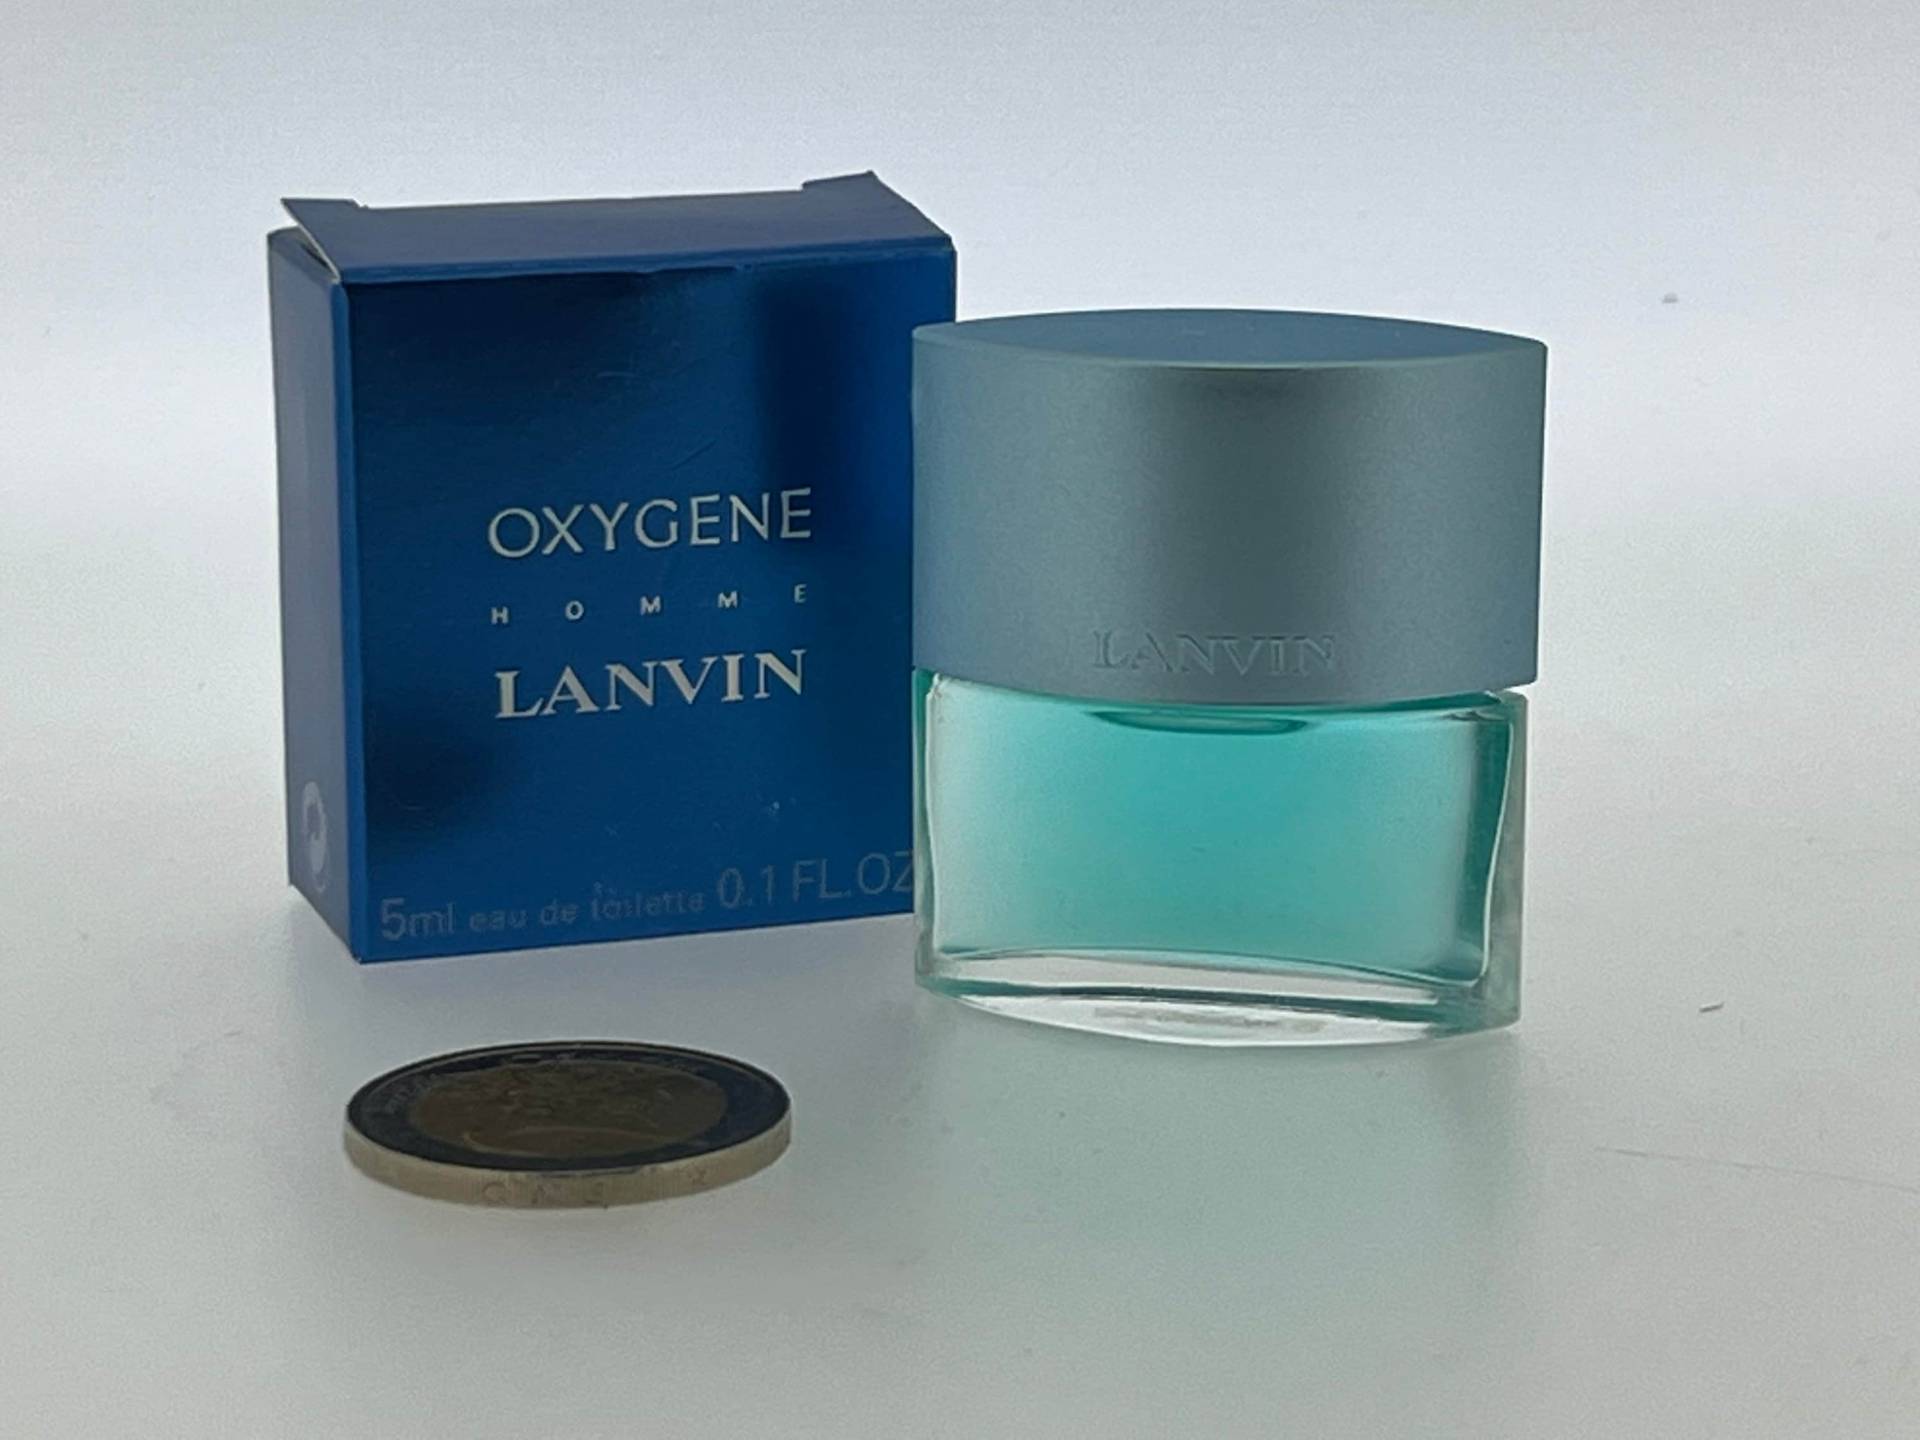 Miniatur Oxygen Man Lanvin 2001 Eau De Toilette 5 Ml von Etsy - VintagGlamour